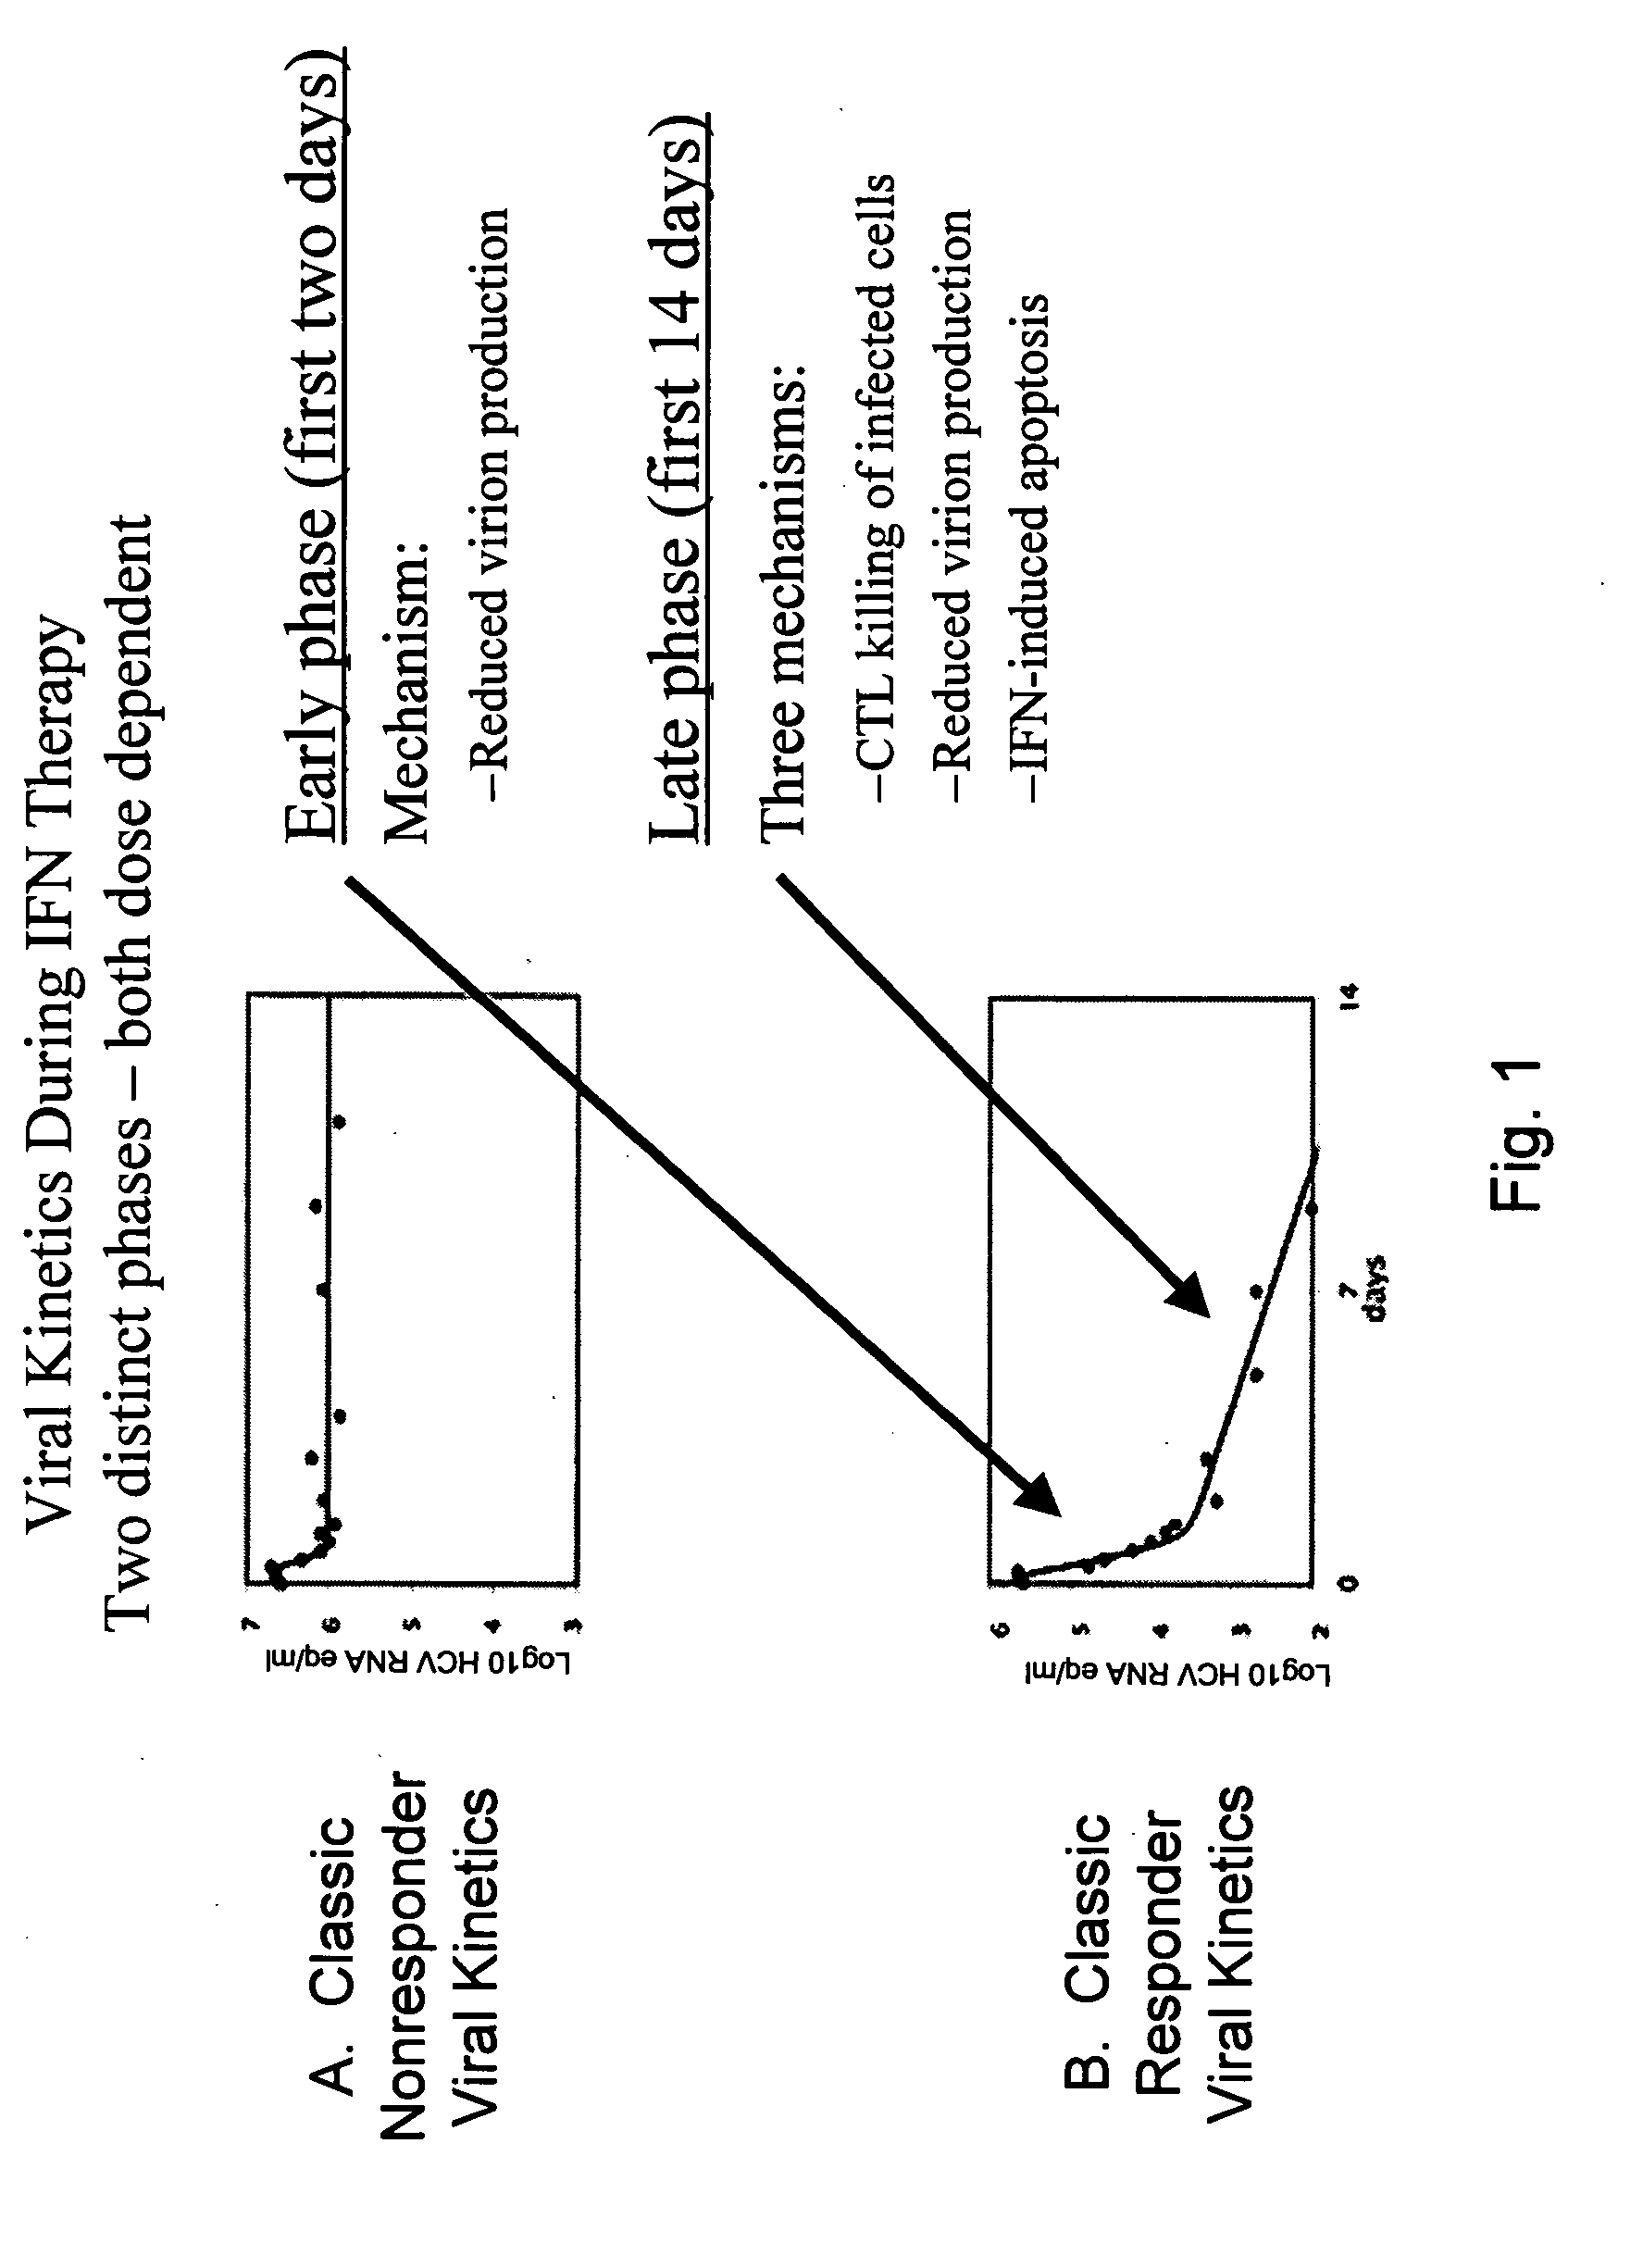 Interferon-alpha polypeptides and conjugates